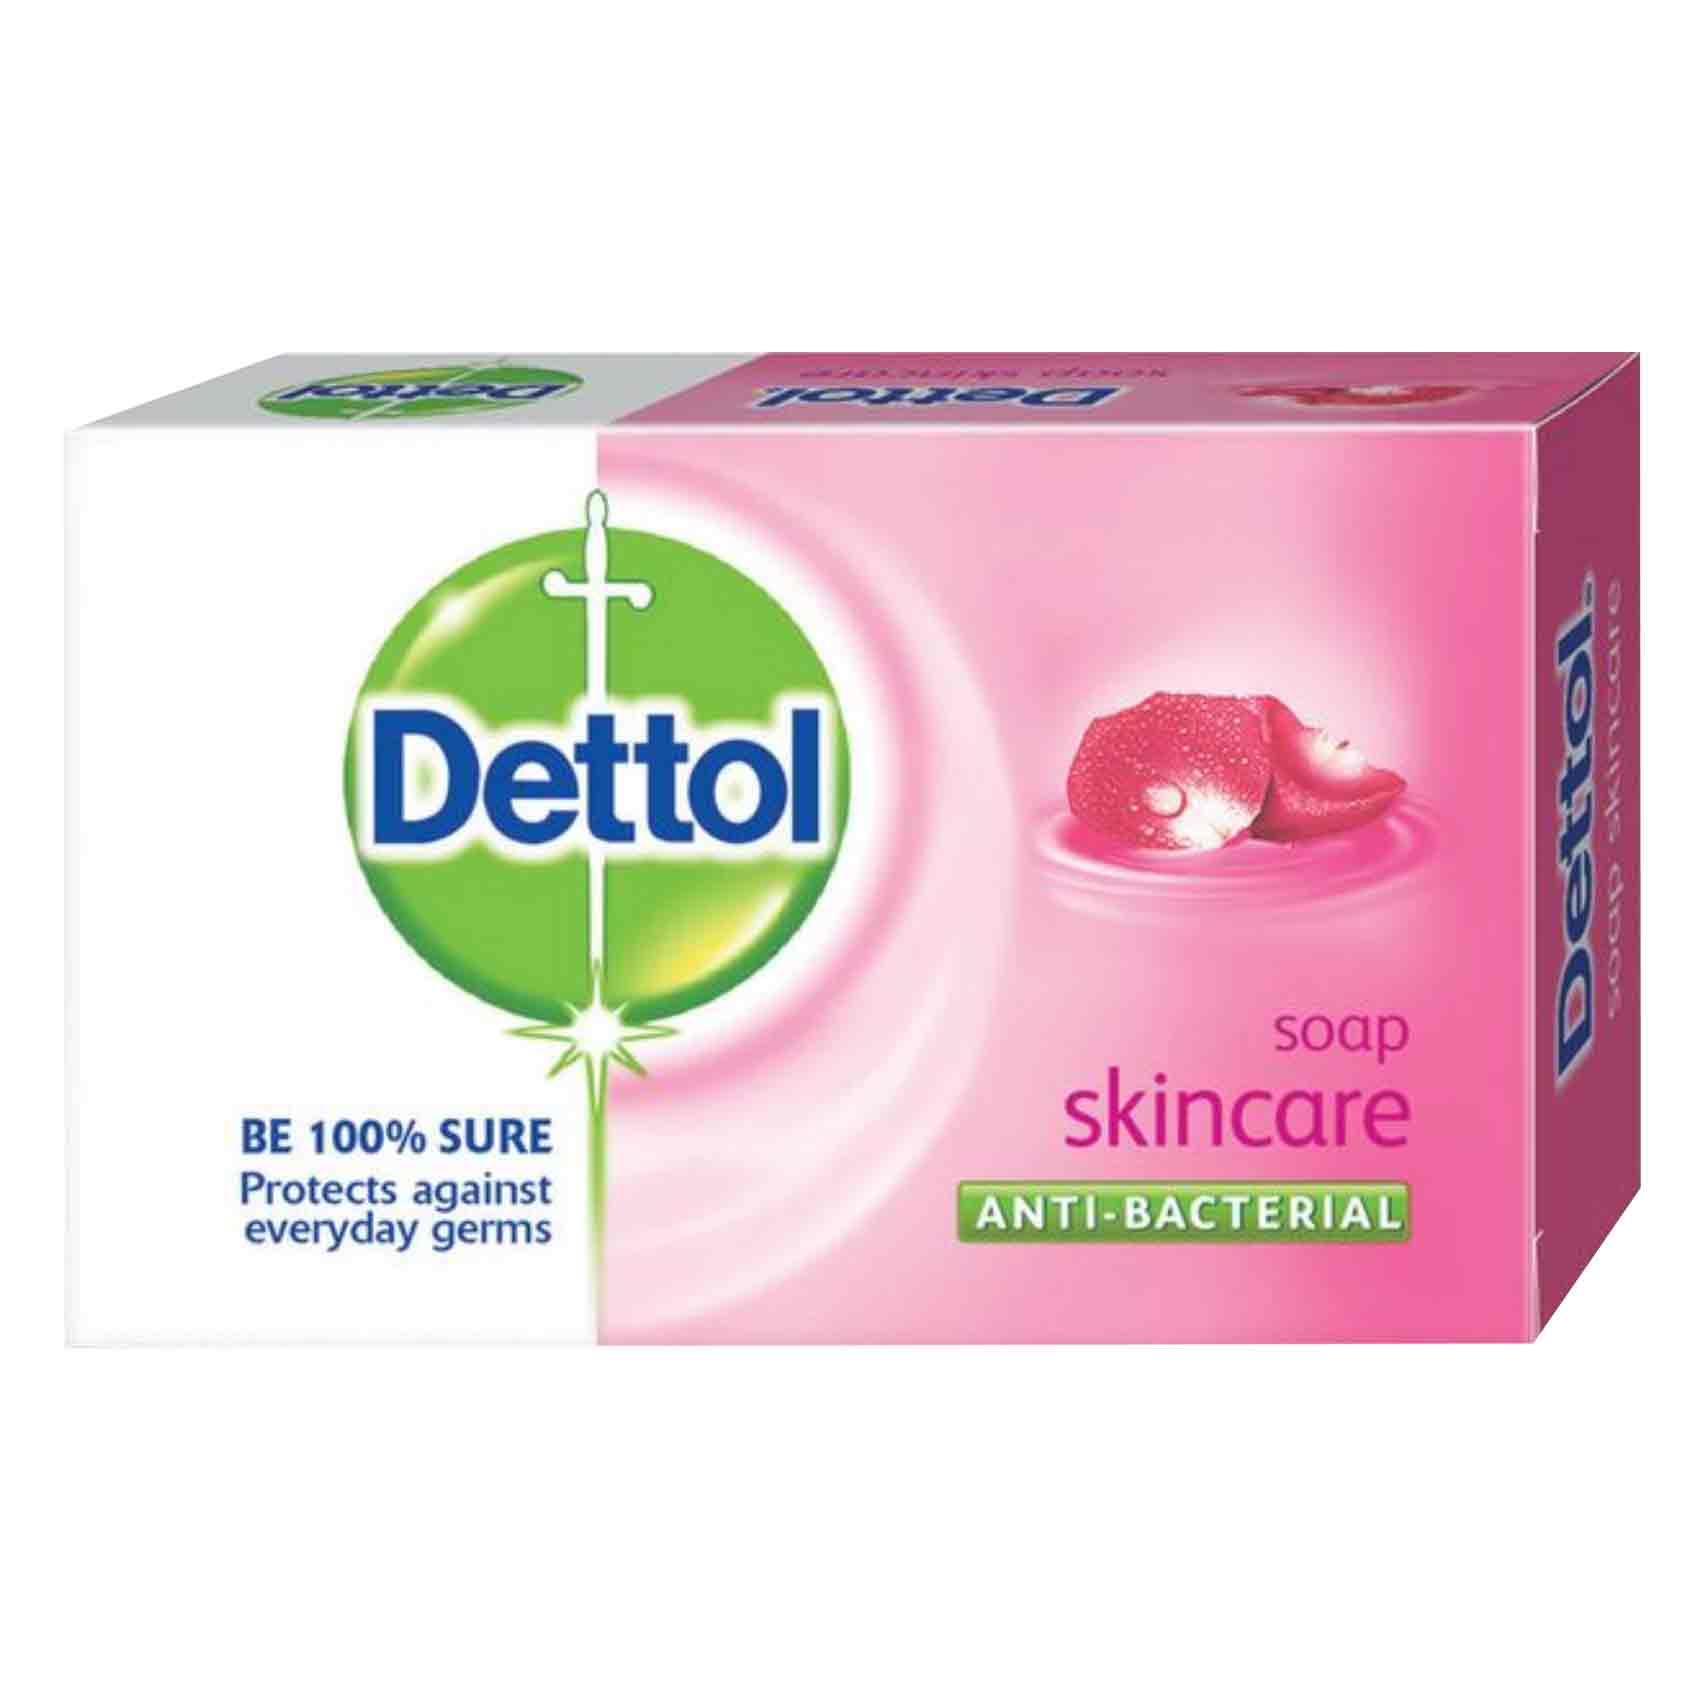 Dettol Bar Soap Skincare 90G